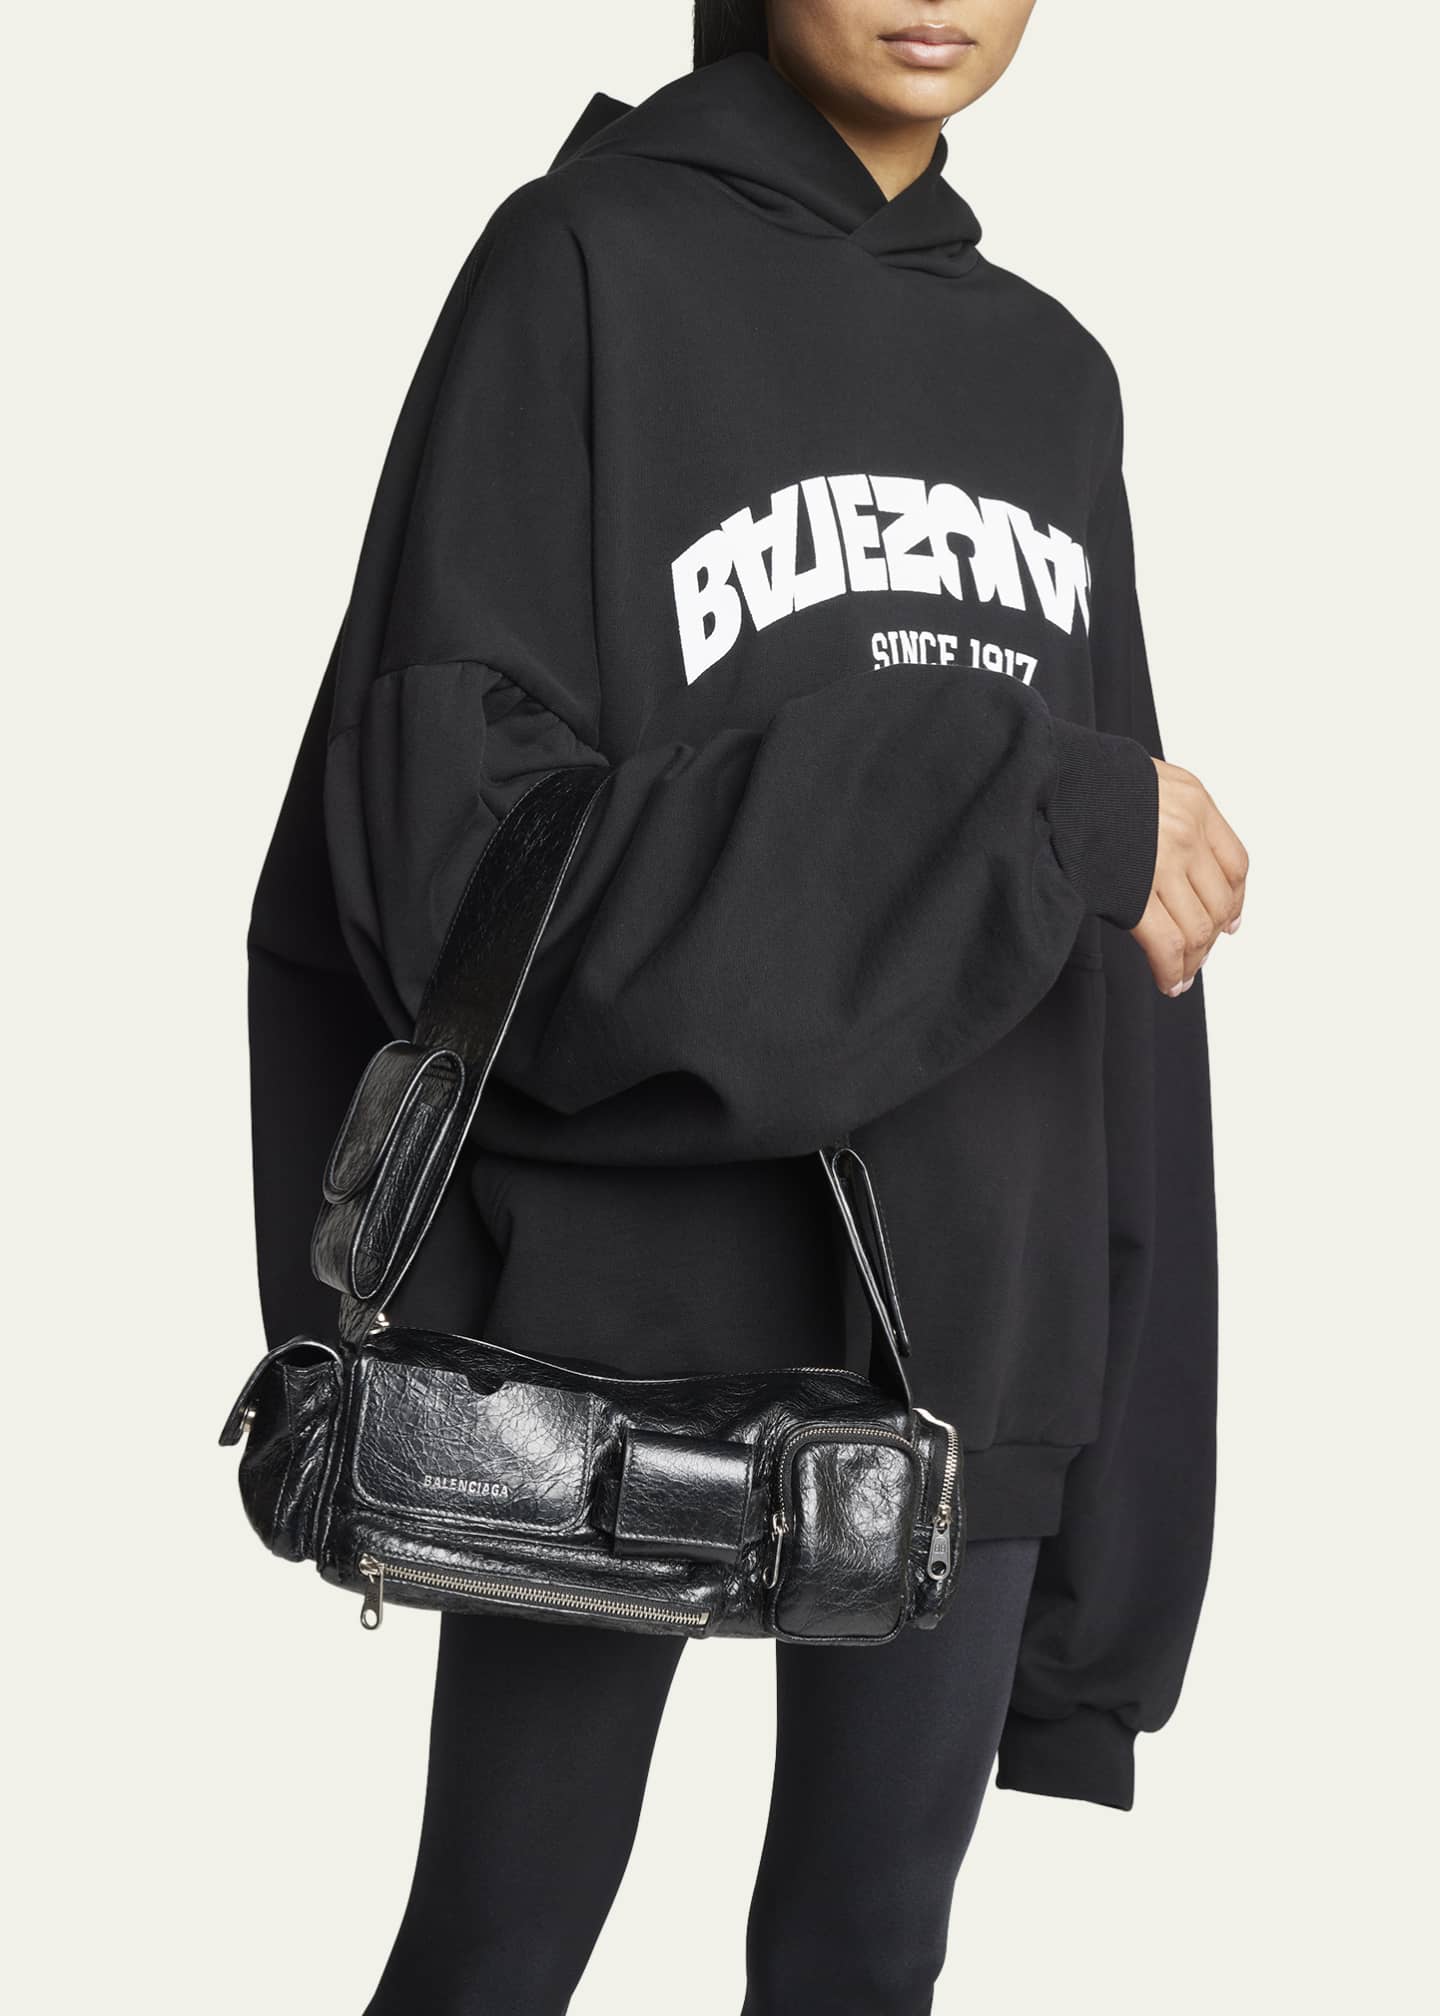 Black Superbusy XS crinkled-leather shoulder bag, Balenciaga